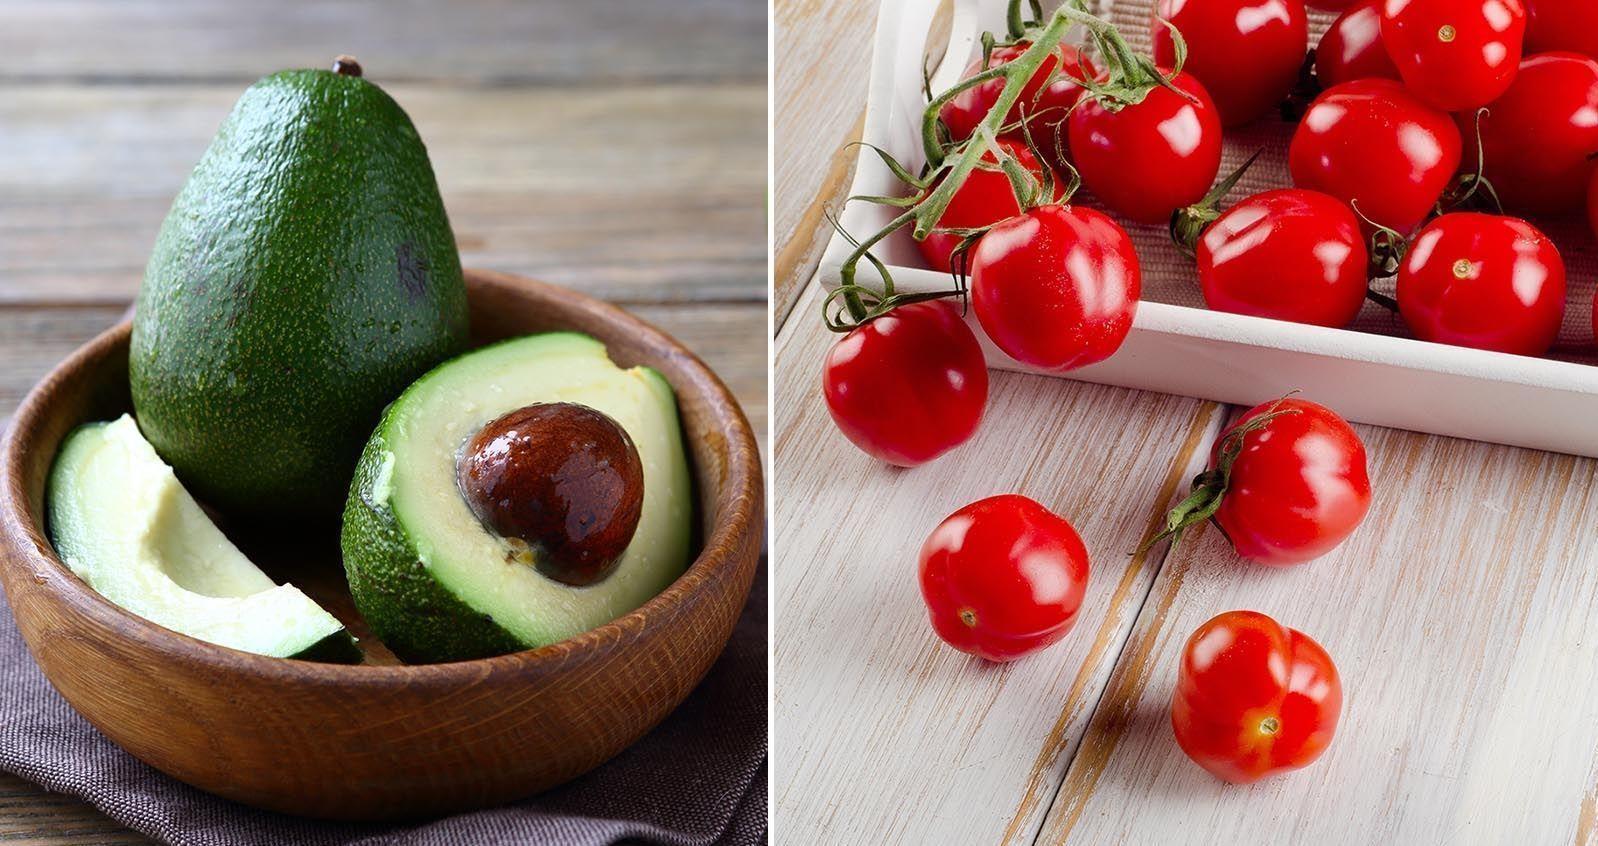 PÅ KJØKKENBENKEN: Både avokado og tomater smaker faktisk aller best når de får ligge på kjøkkenbenken og ikke i kjøleskapet. Foto: NTB Scanpix